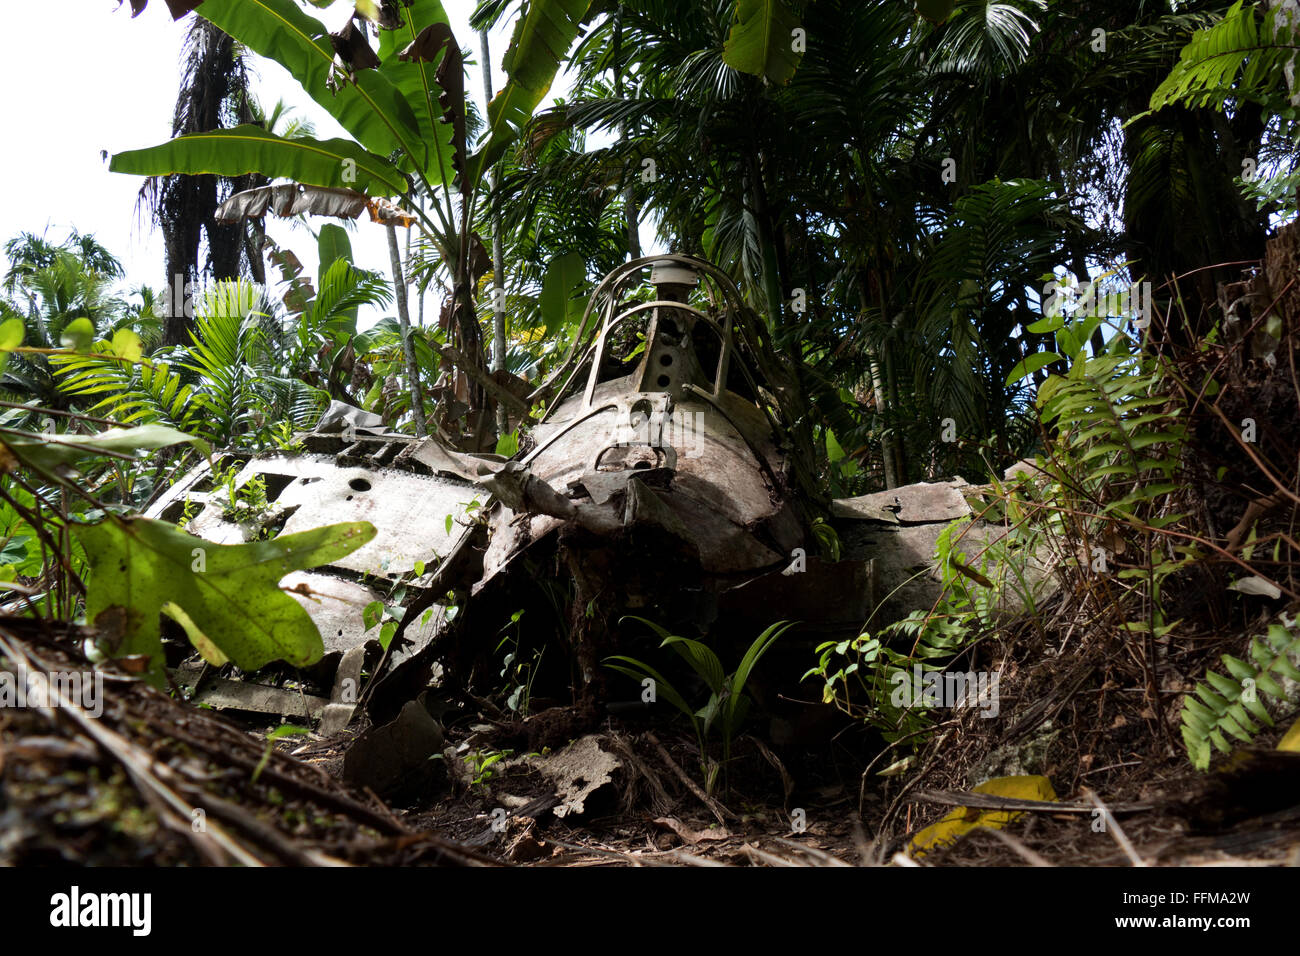 Zero, ein japanisches Kampfflugzeug, wie ein Wrack im Dschungel. Überreste der Schlacht von Peleliu (Palau 1944), die im Zweiten Weltkrieg zwischen den USA und Japan gekämpft wurde Stockfoto